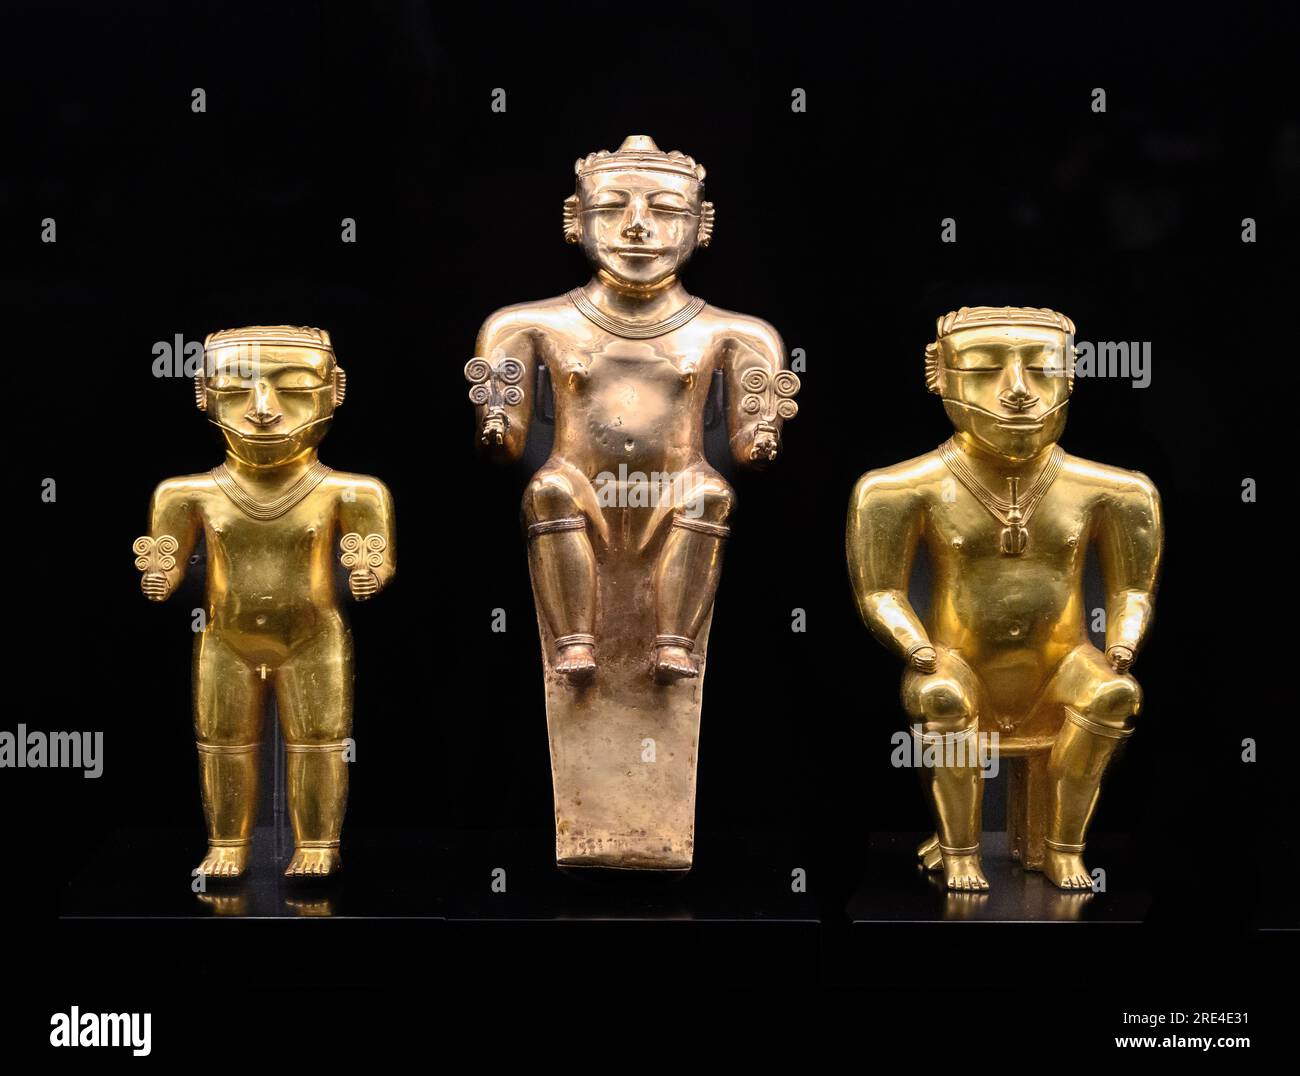 Goldene Statuetten von Quimbayan Chiefs, die auf Stühlen sitzen, die Macht zeigen, und stehen, geschmückt mit verschiedenen karakteristischen Elementen ihres Ranges. Quimb Stockfoto